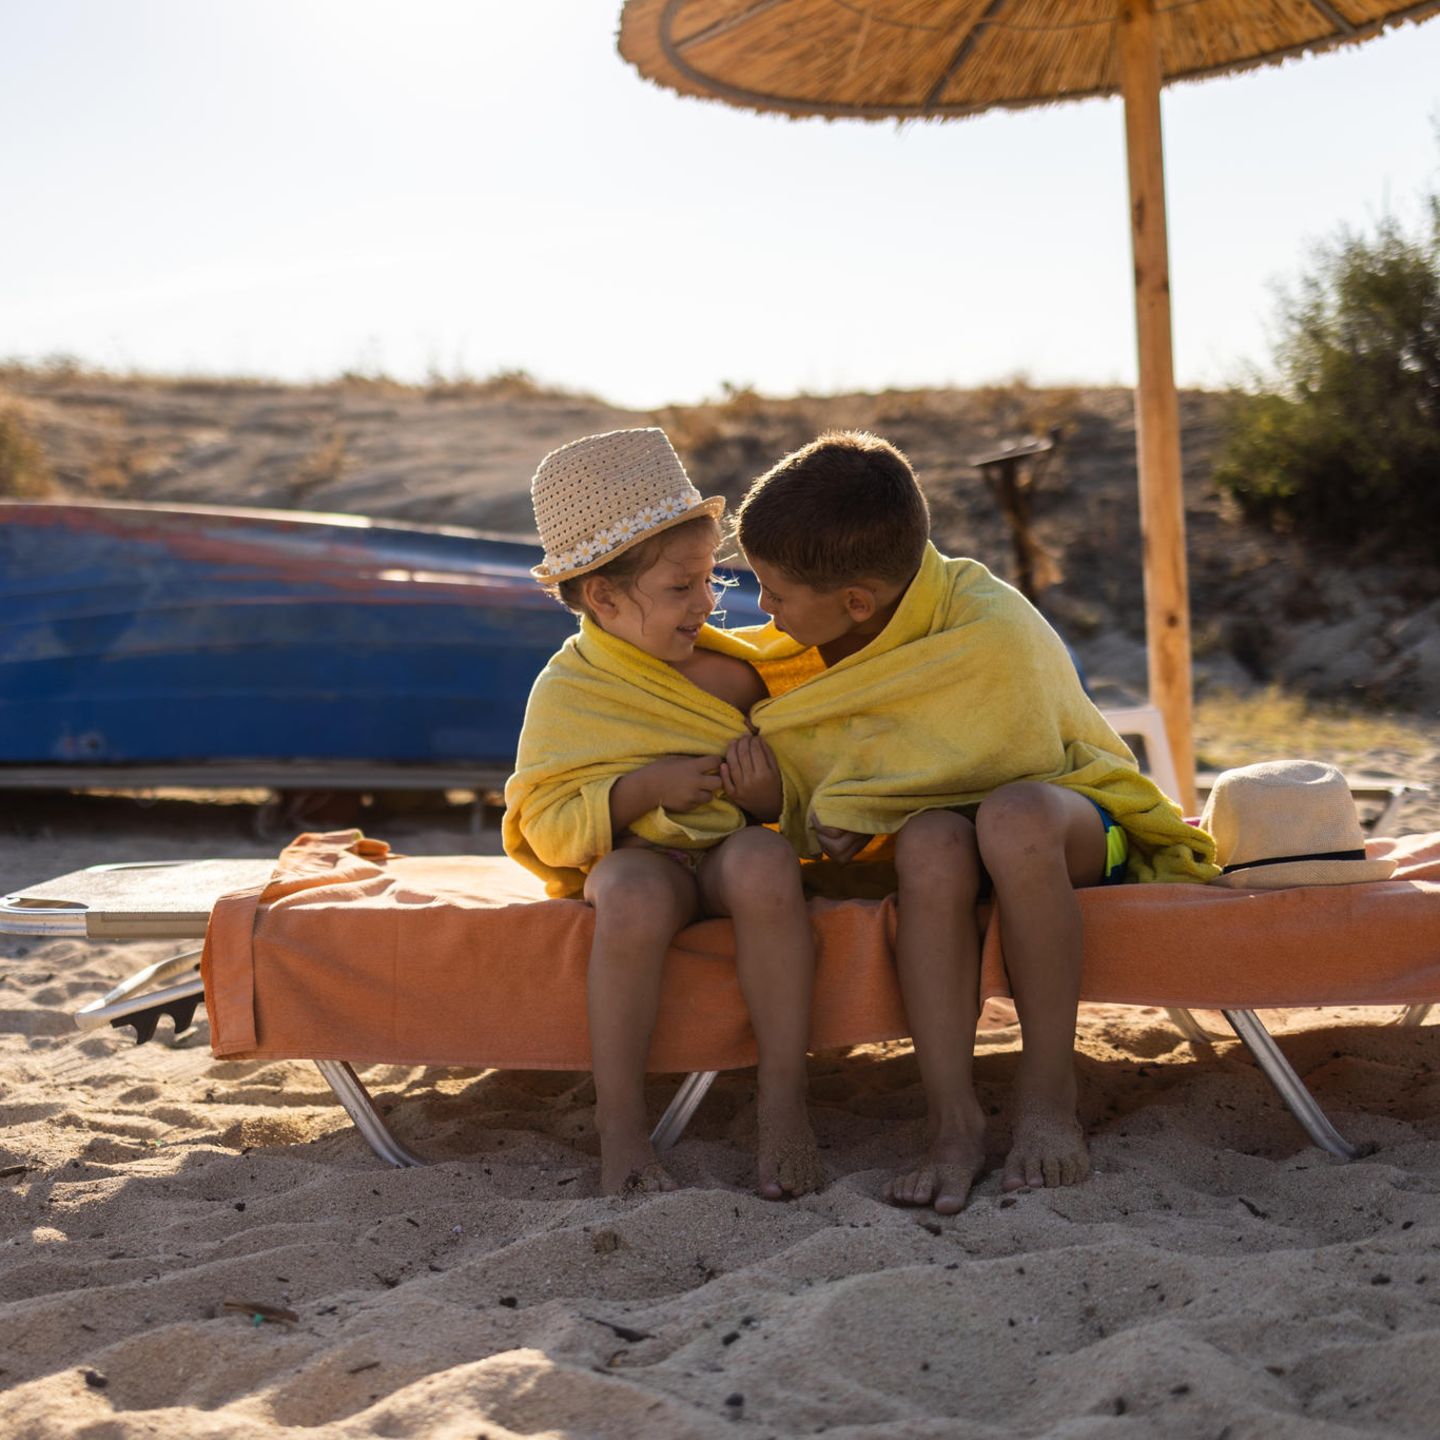 Sonnenschutz für Kids: Warum er so wichtig ist